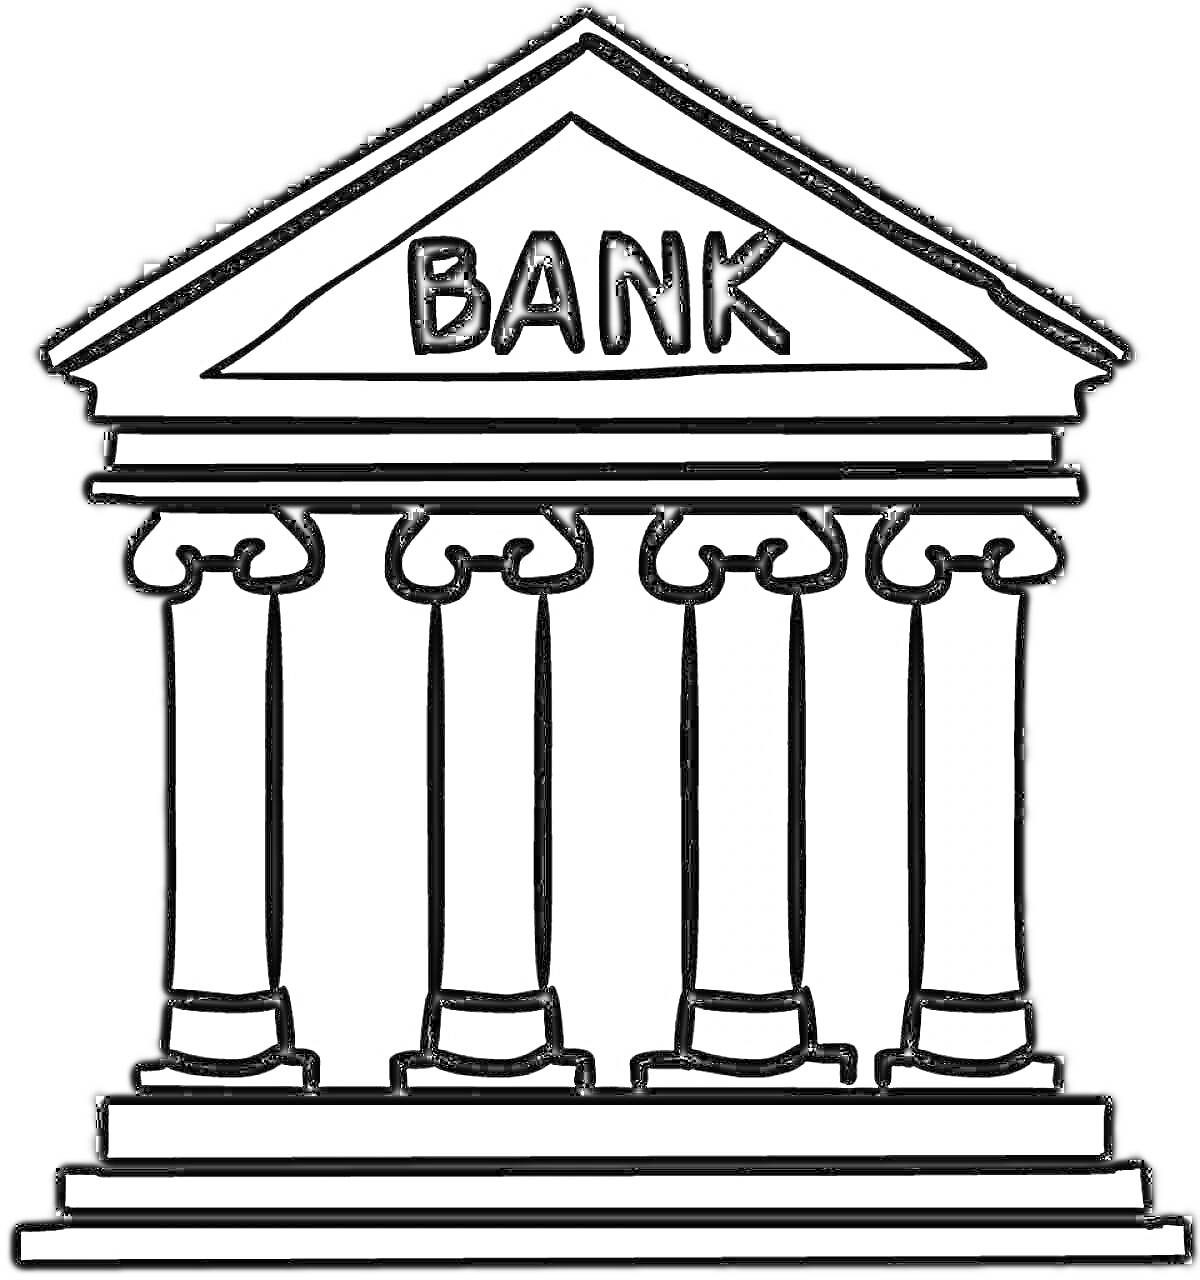 Здание банка с колоннами и надписью 